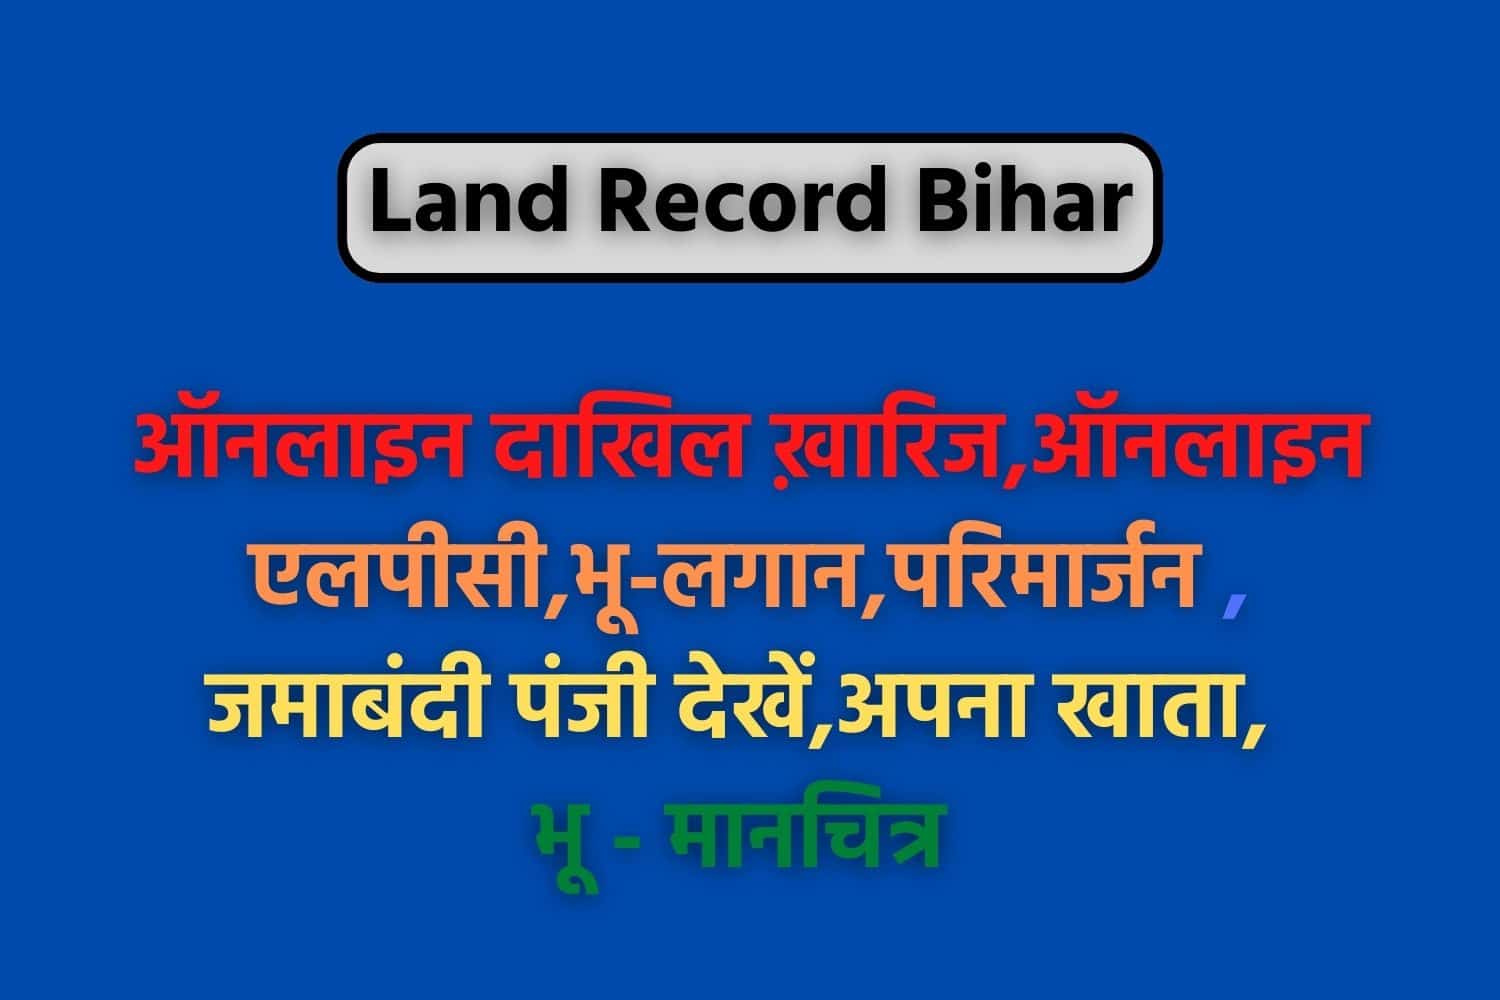 Land Record Bihar : बिहार भूलेख, अपना खाता, खतौनी, जमाबंदी , परिमार्जन कैसे देखें